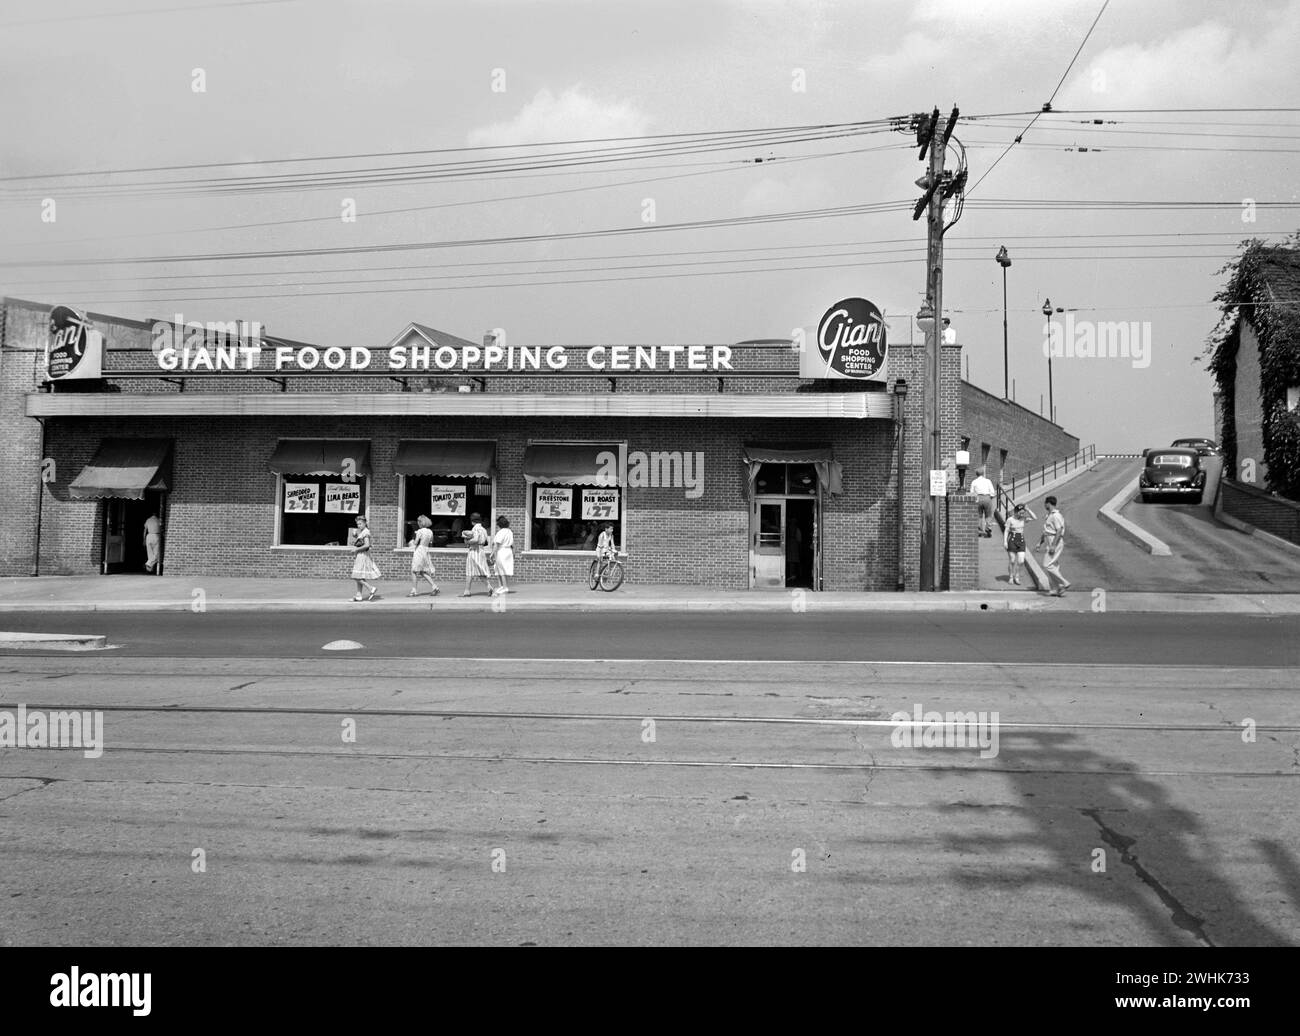 Scène de rue, clients à l'extérieur du centre commercial Giant Food, Wisconsin Avenue, Washington, D.C., États-Unis, Marjory Collins, U.S. Office of War information, juin 1942 Banque D'Images